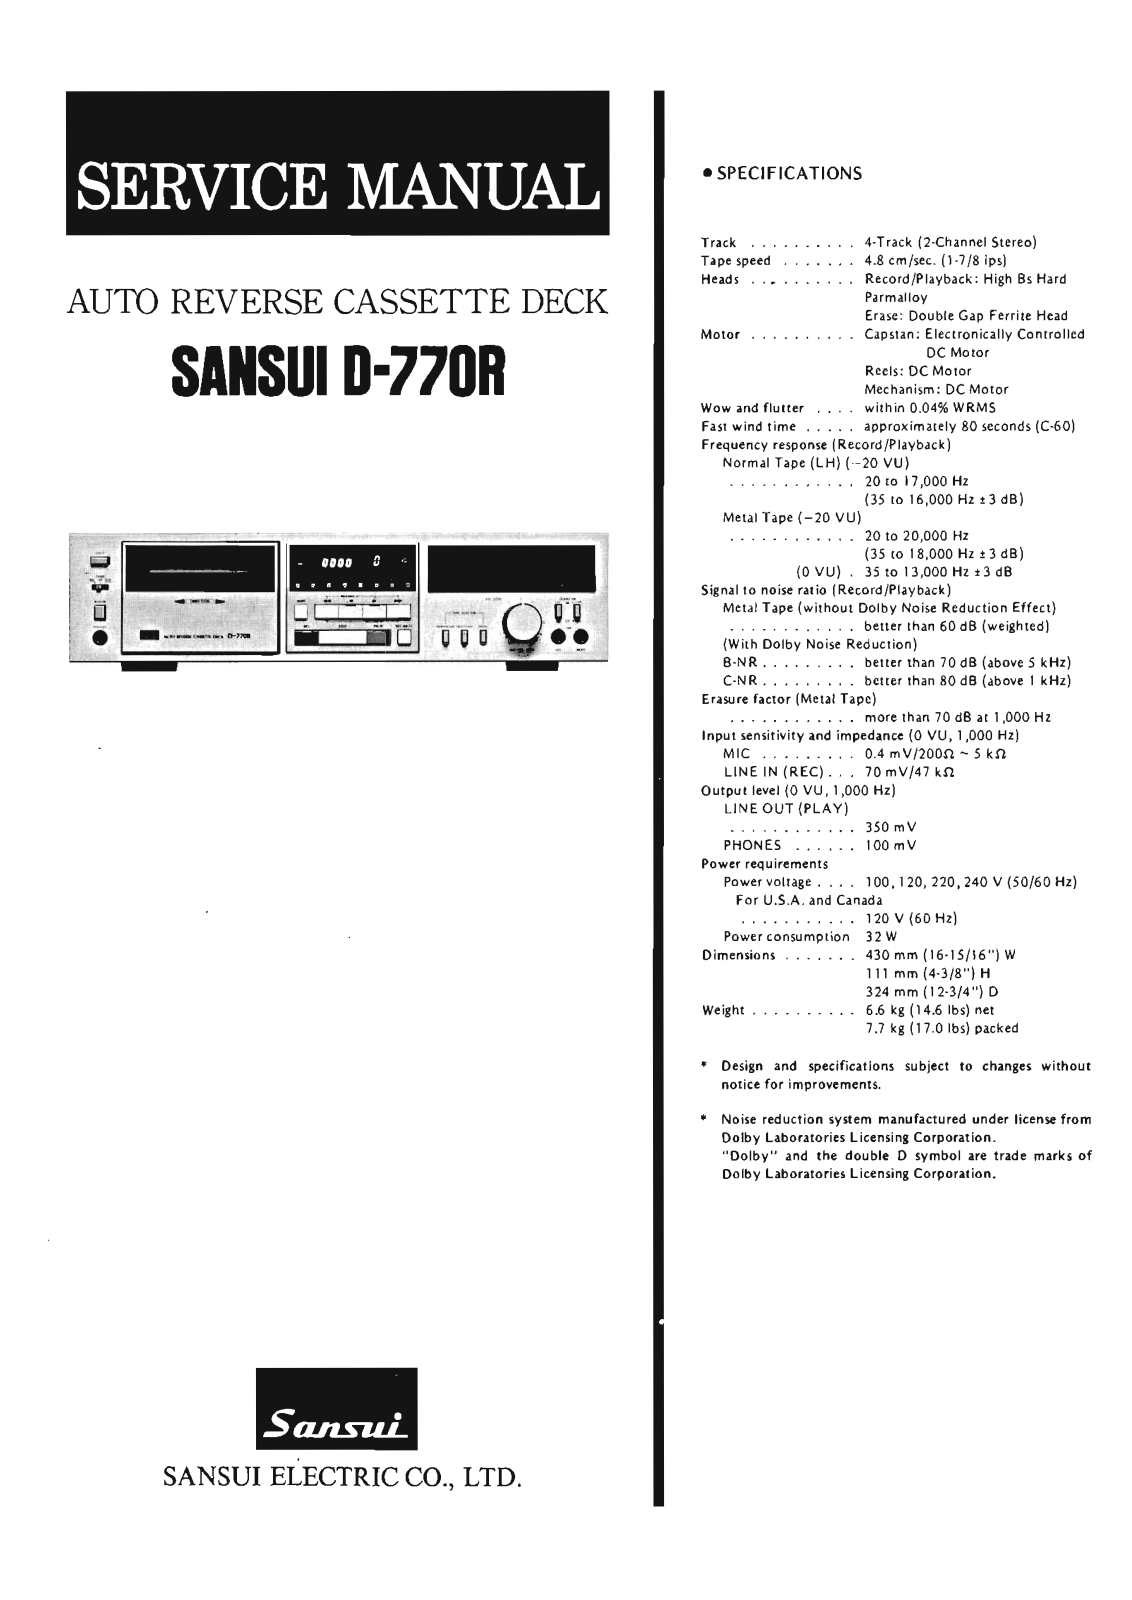 Sansui D-770-R Service Manual